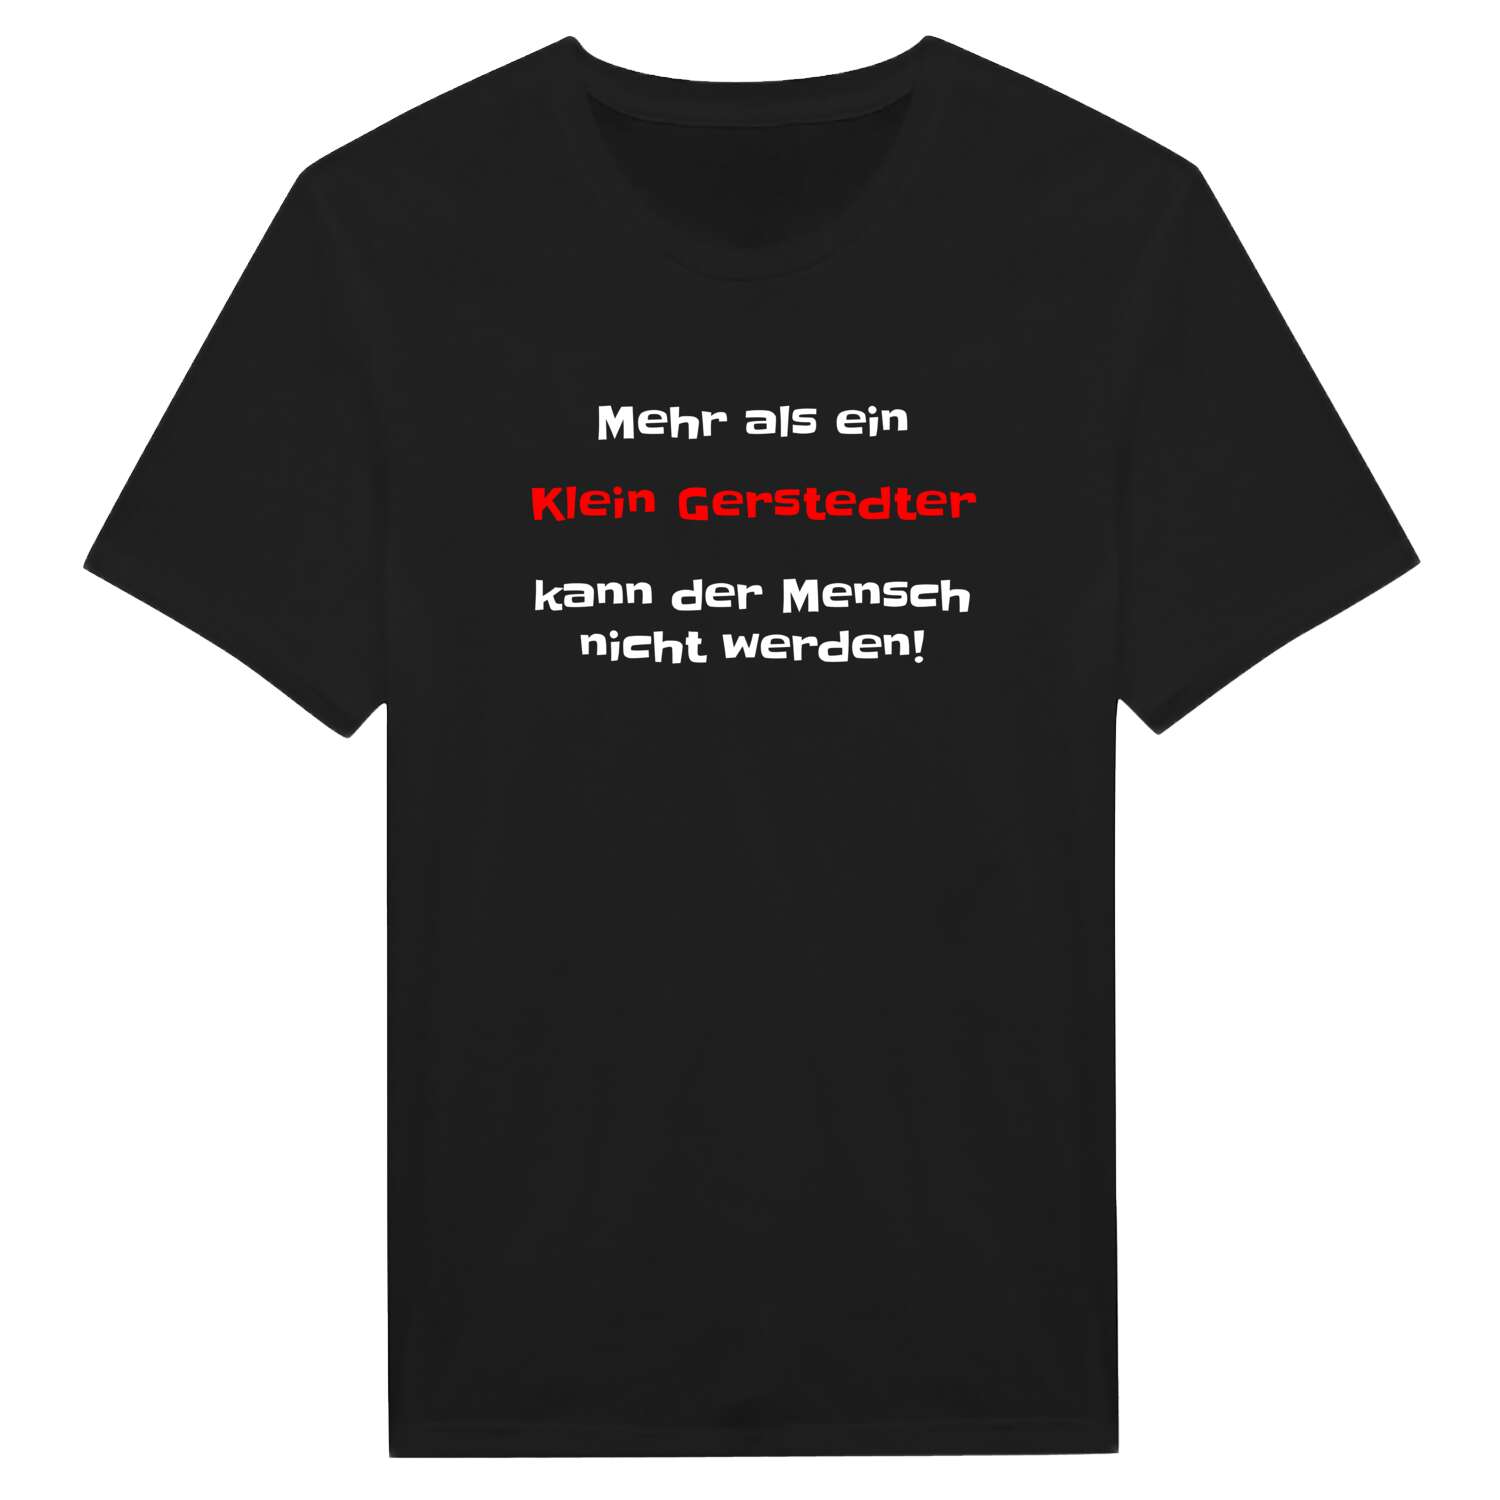 Klein Gerstedt T-Shirt »Mehr als ein«